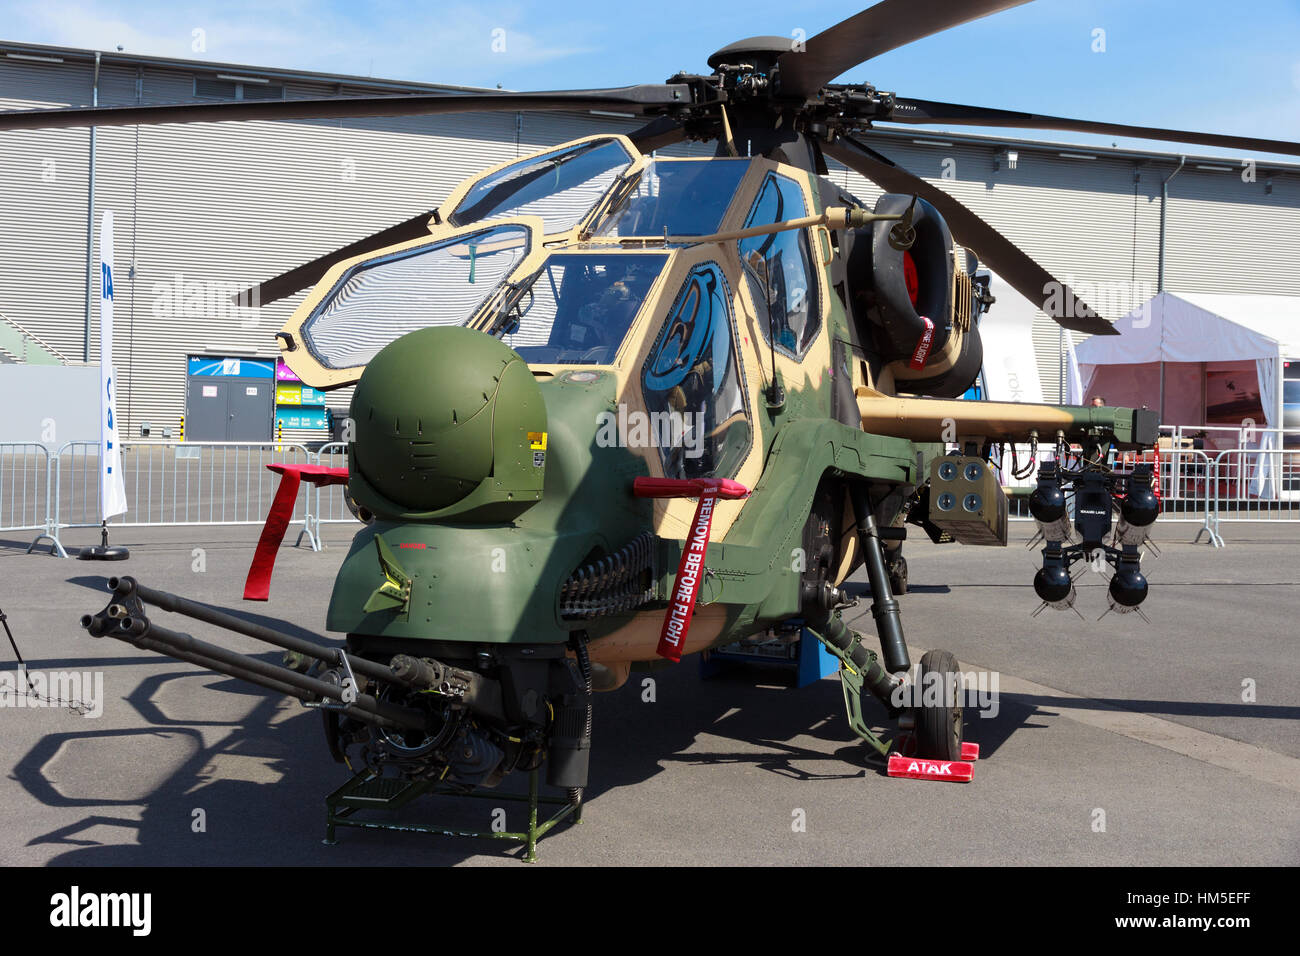 BERLIN, Deutschland - Mai 21: Turkish Aerospace Industries T129 Angriff Hubschrauber auf der int Luft-und Ausstellung ILA am 21. Mai 2014 in Berlin, Deutsch Stockfoto